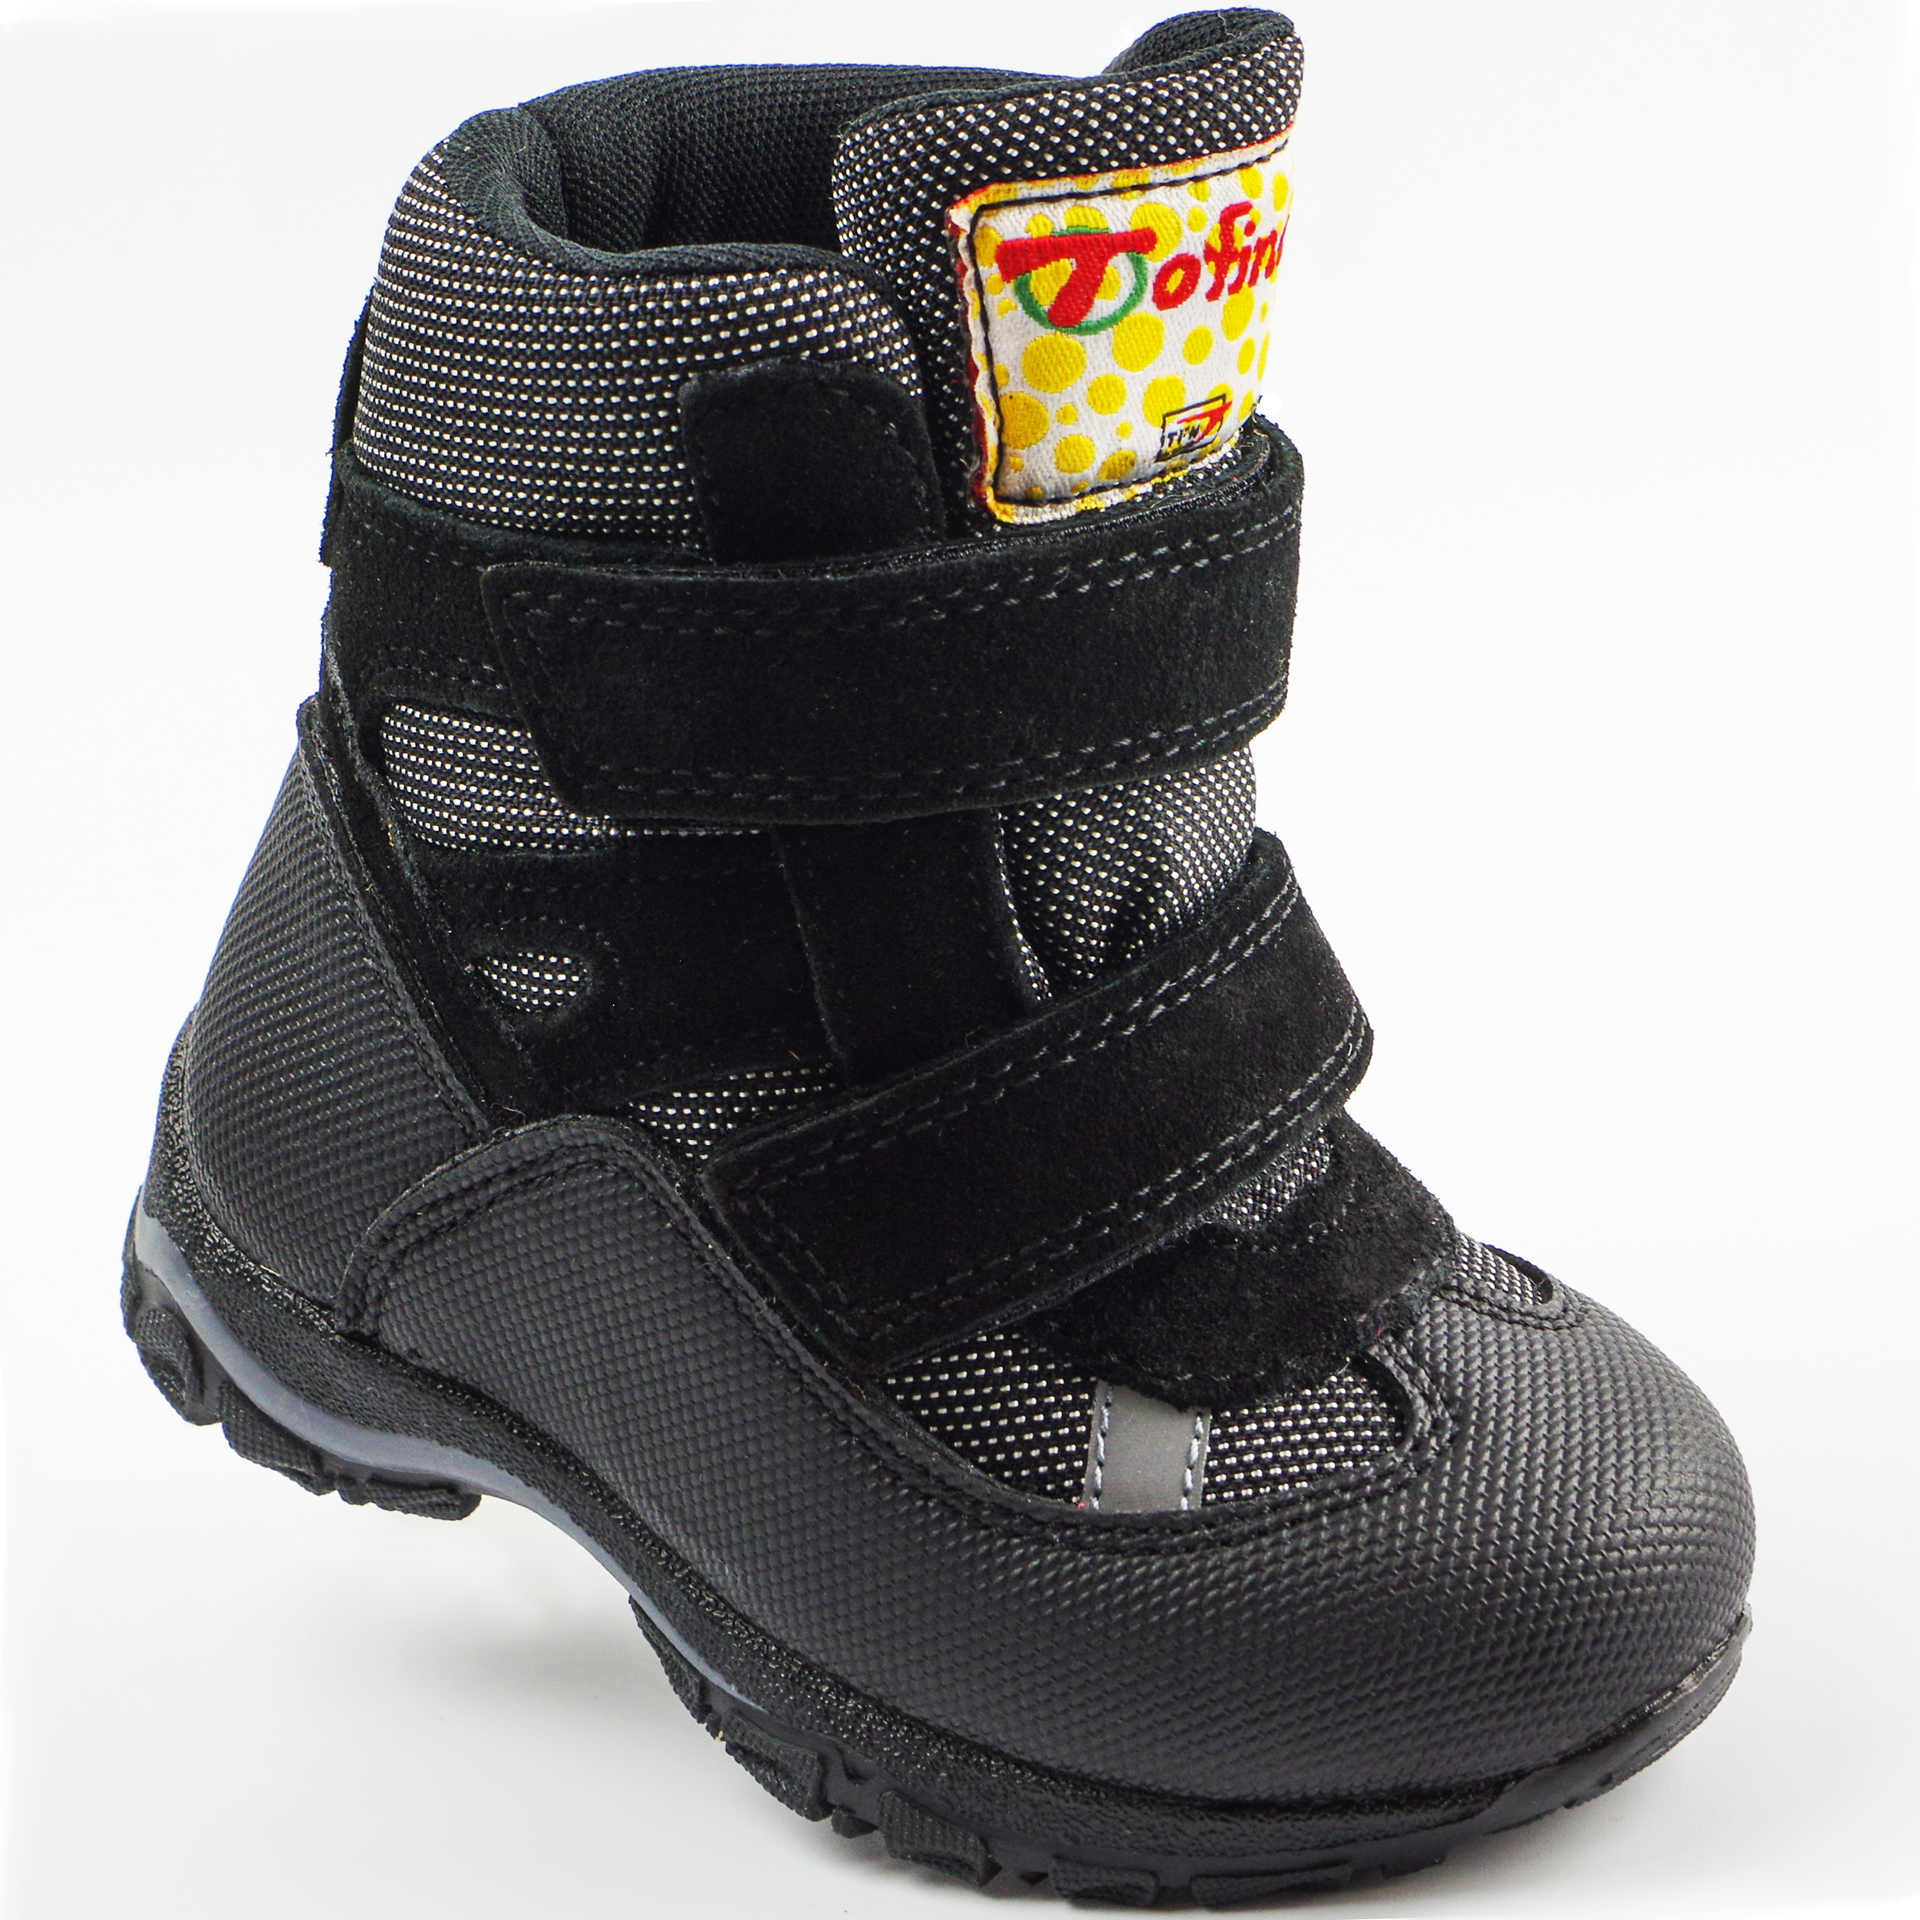 Зимові мембранні черевики (2147) для хлопчика, матеріал Мембрана, Чорний колір, 22-25 розміри – Sole Kids